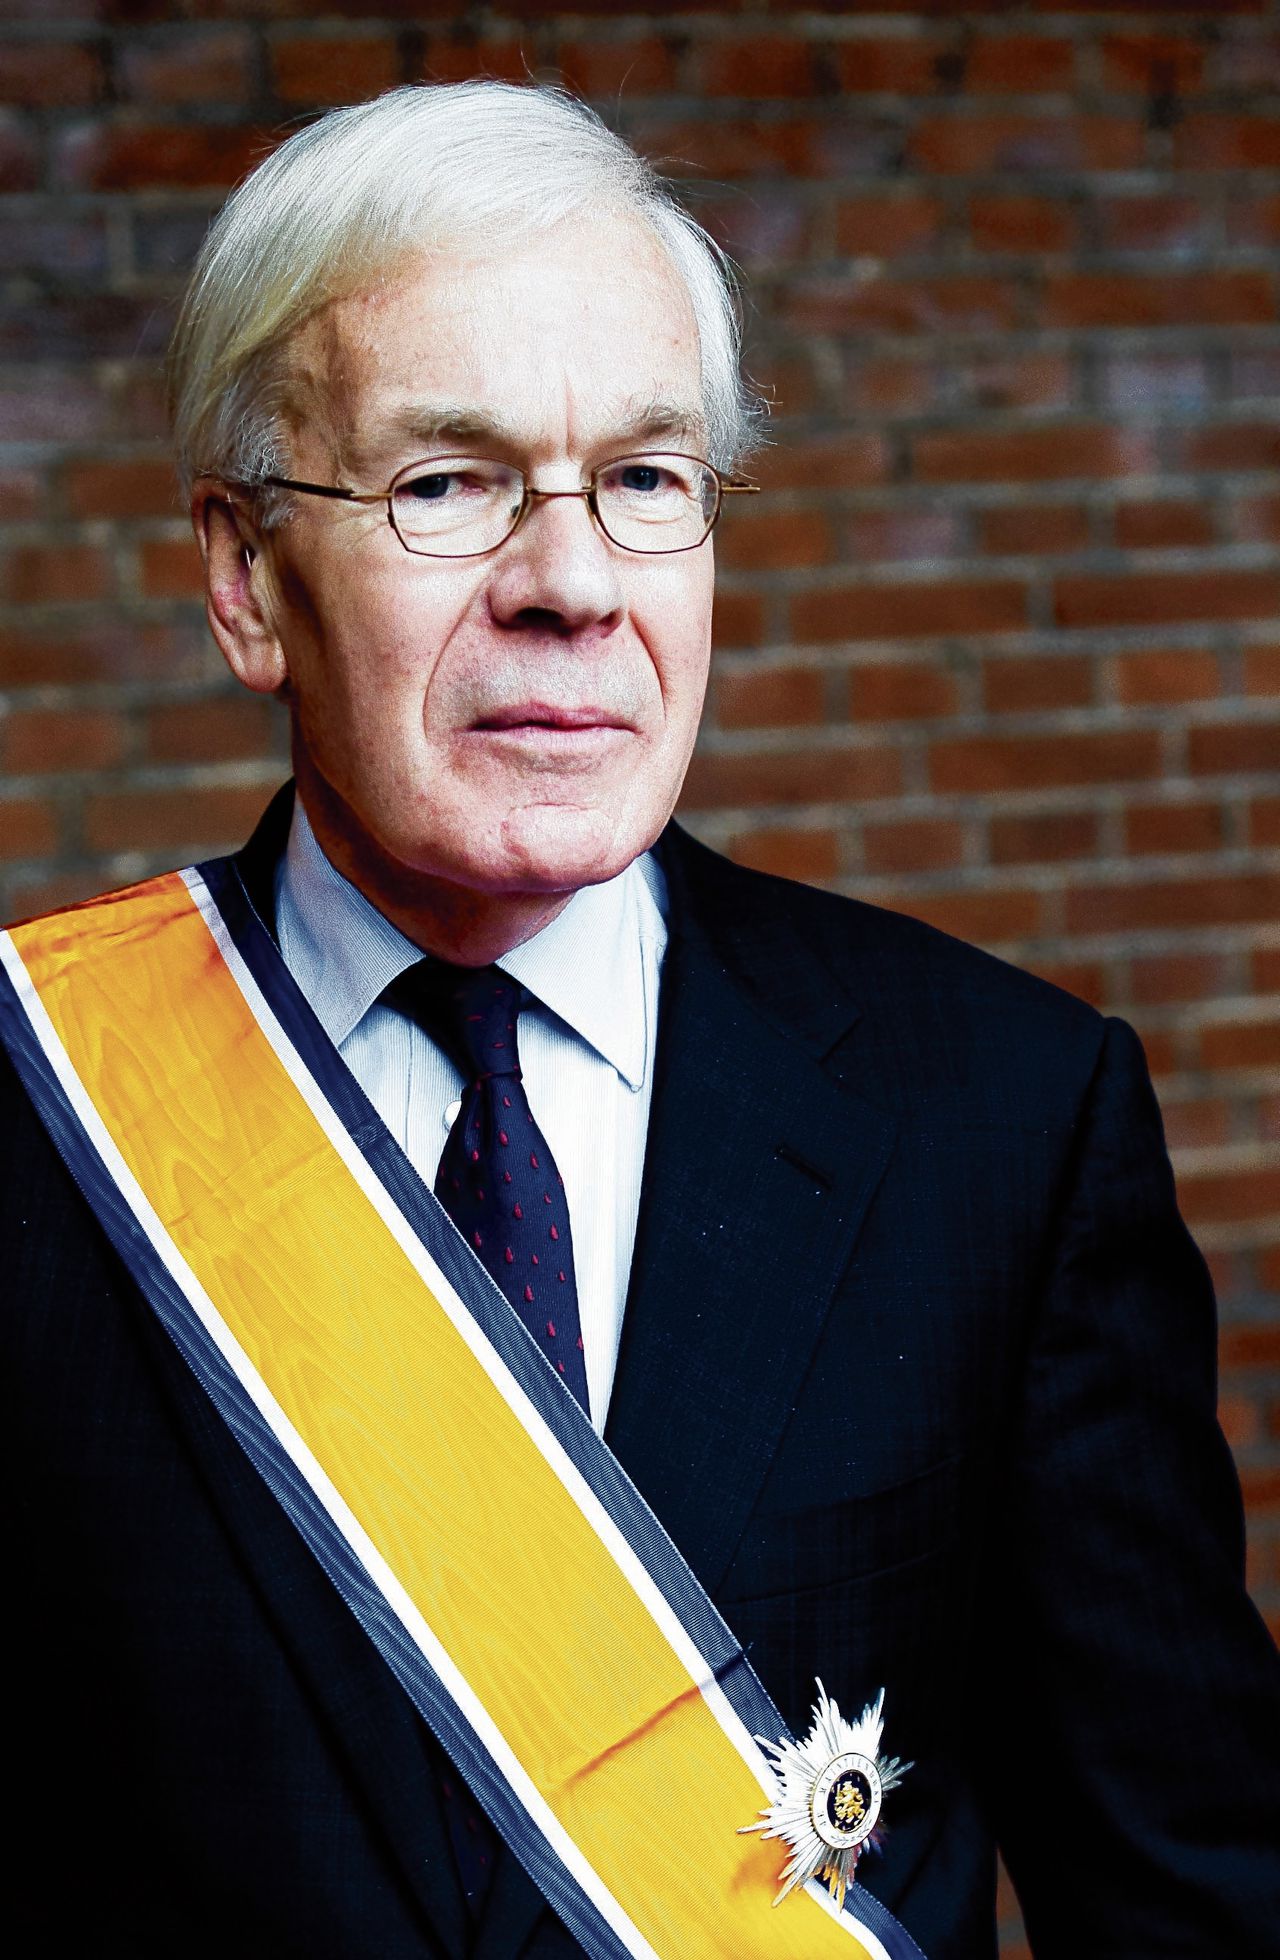 Herman Tjeenk Willink werd in 2012 benoemd tot Ridder Grootkruis in de Orde van Oranje-Nassau.